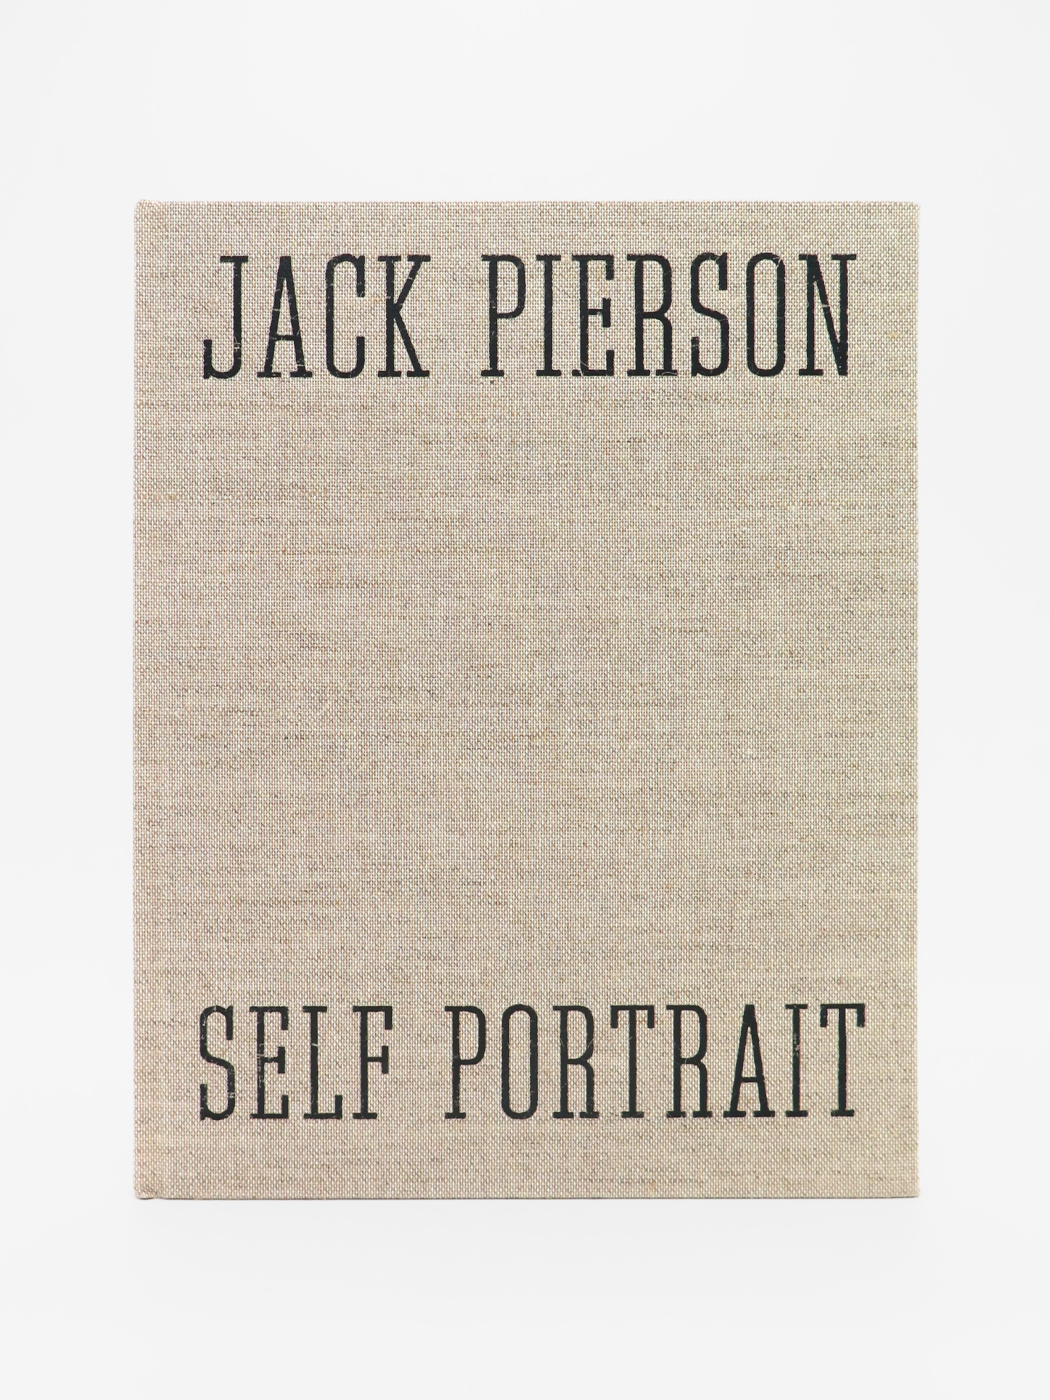 Jack Pierson, Self Portrait